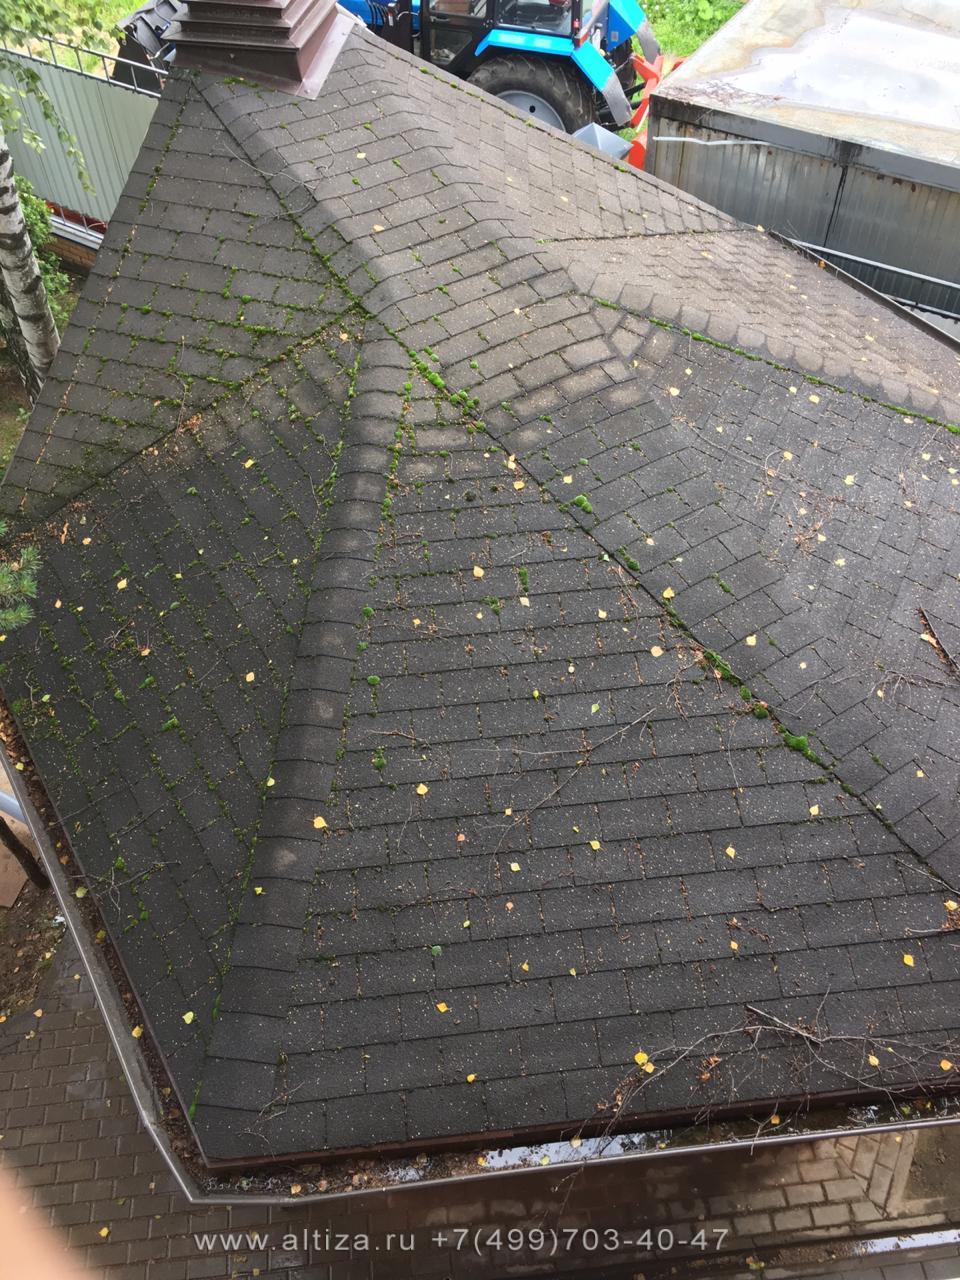 Уборка крыши от мха